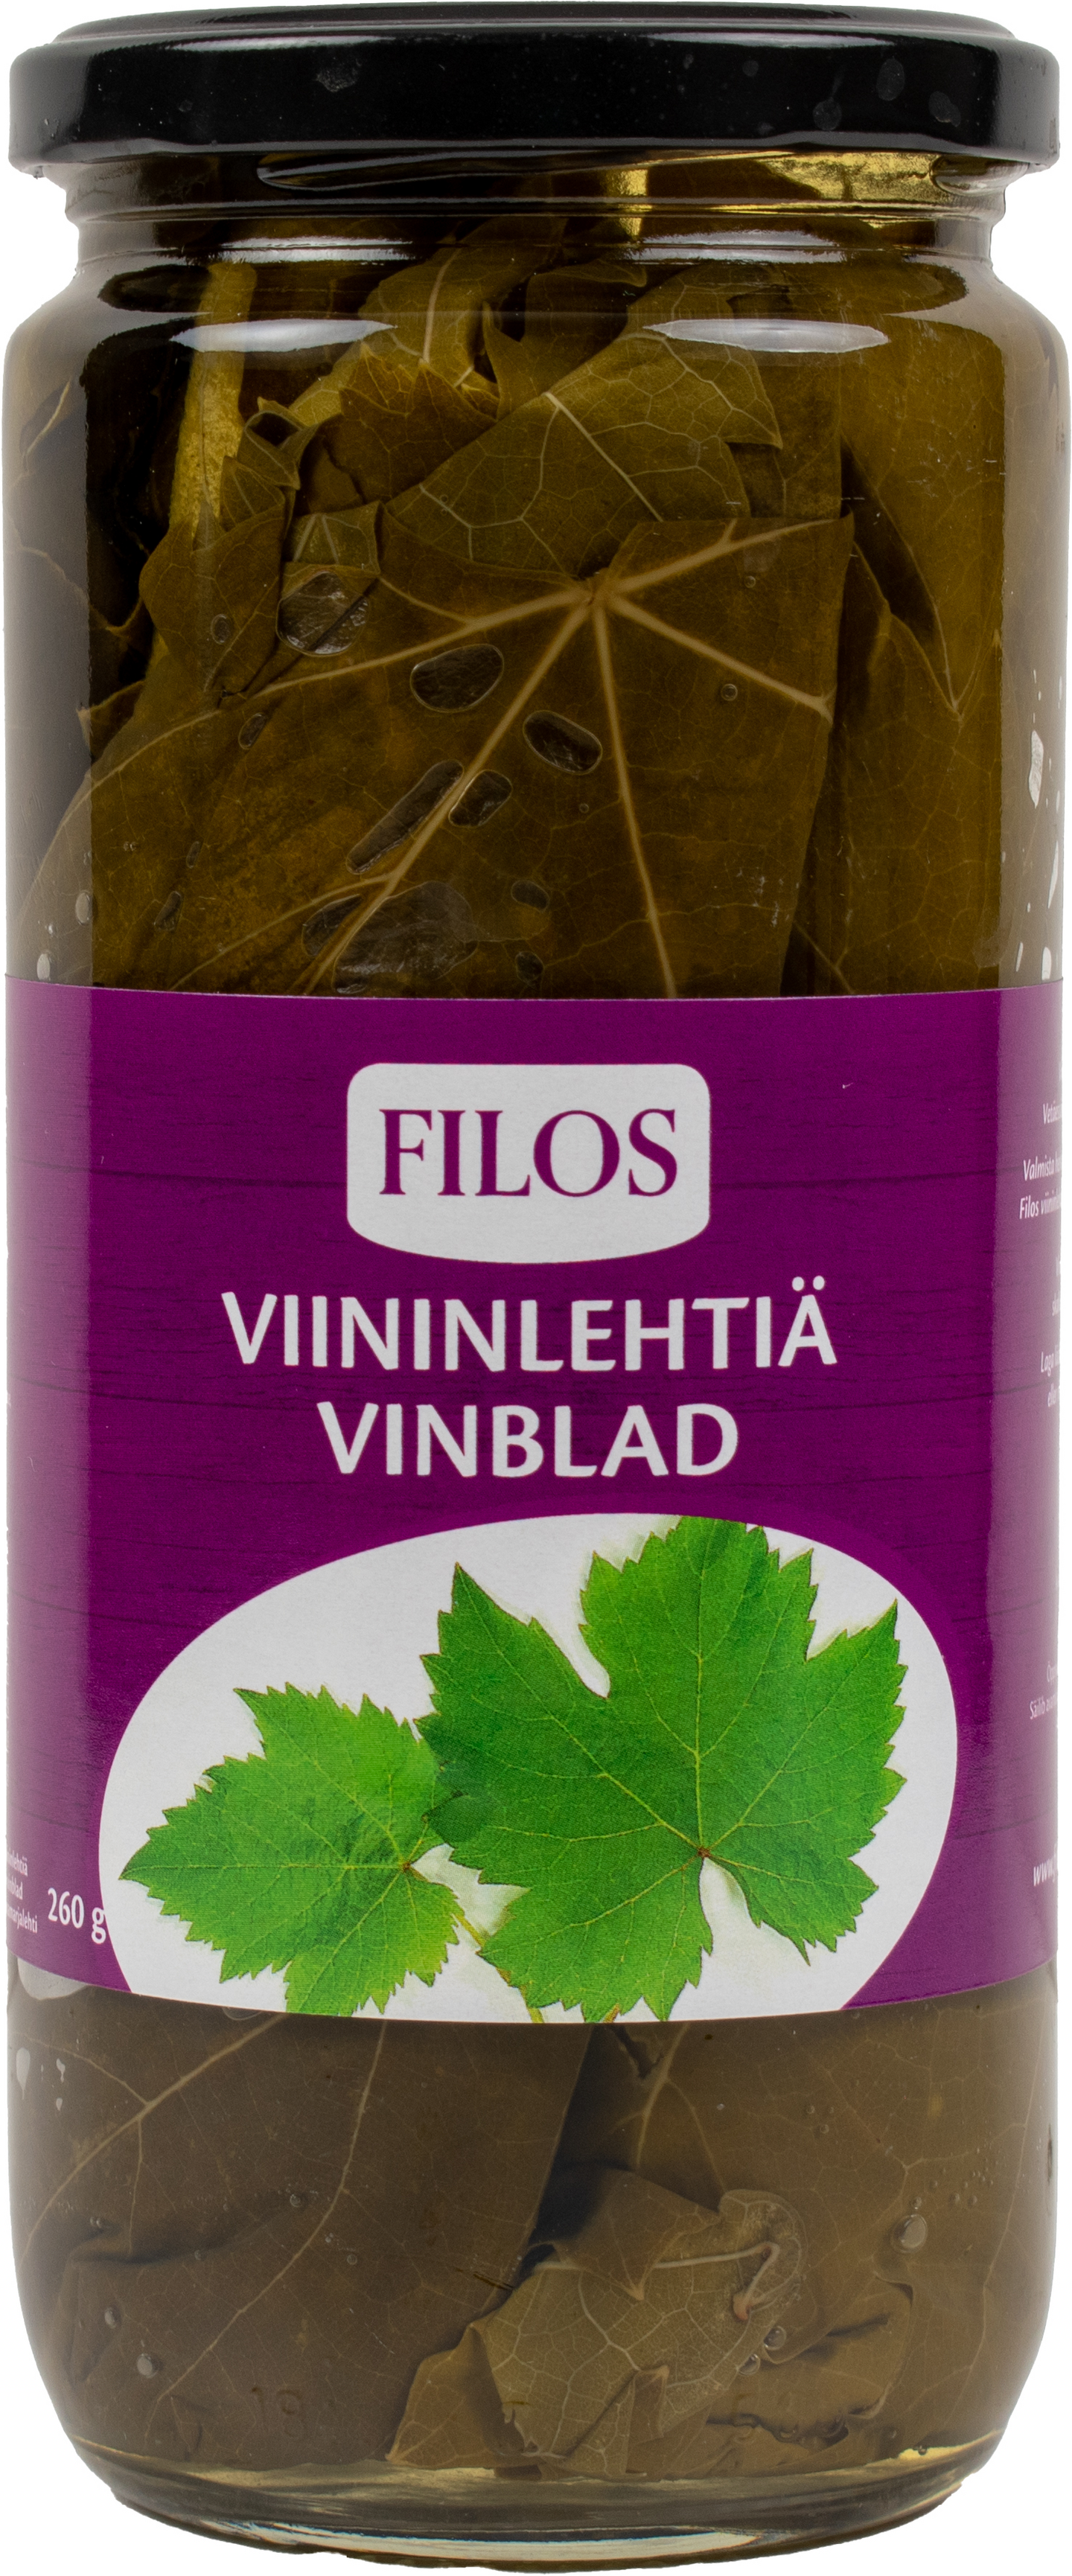 Filos viininlehtiä suolaliemessä 430g/260g